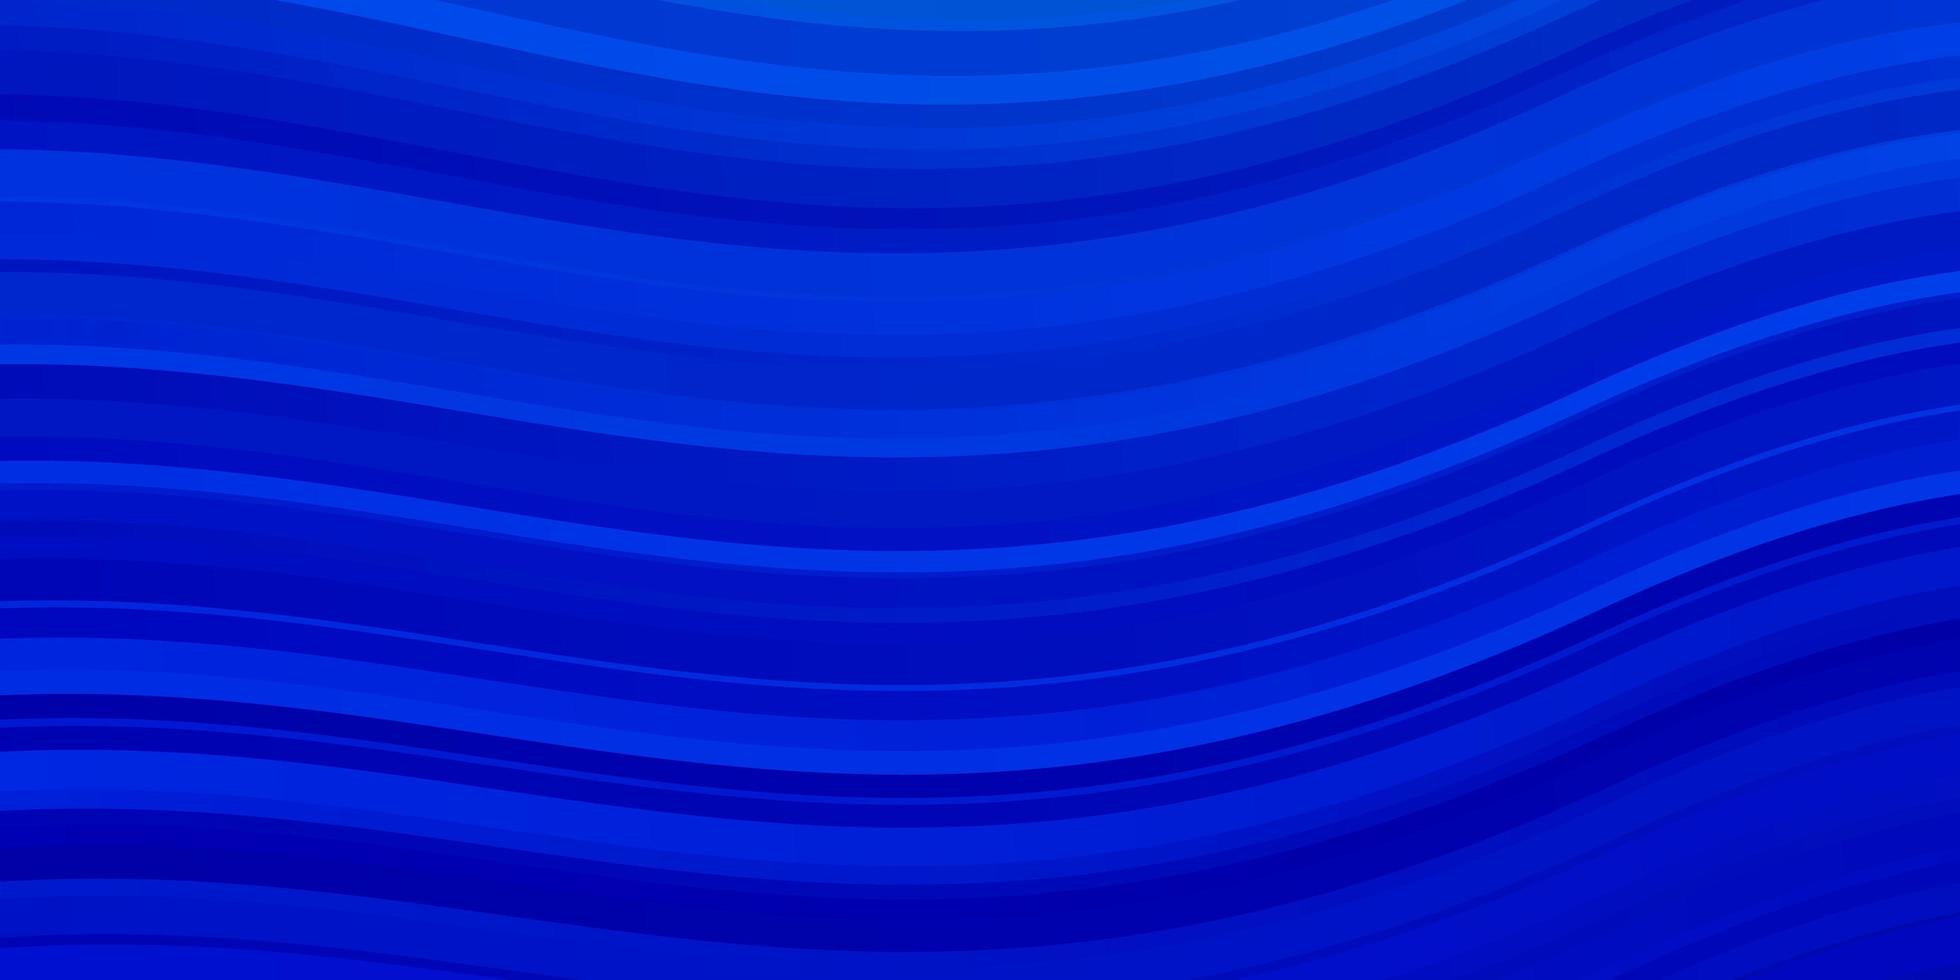 modèle vectoriel bleu clair avec des lignes courbes.